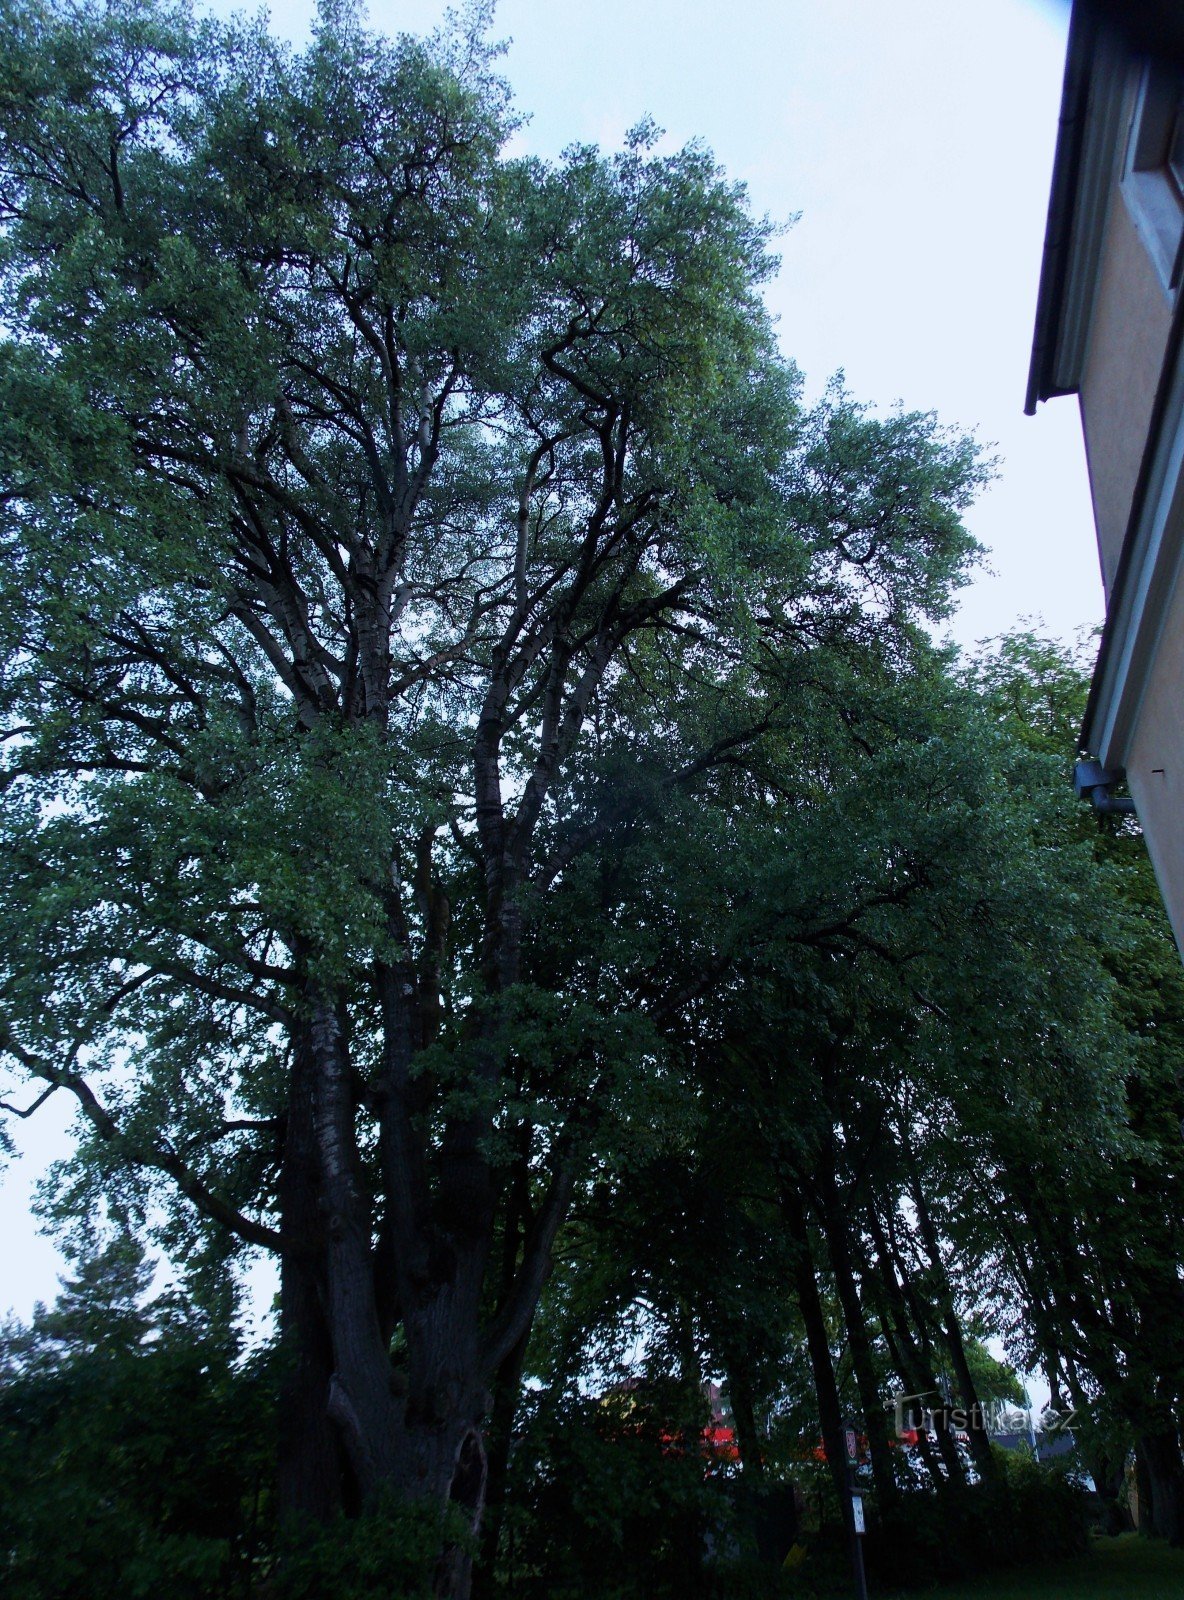 Drzewo pamiątkowe - Topola szara w pobliżu zamku w Vrbnie pod Pradědem